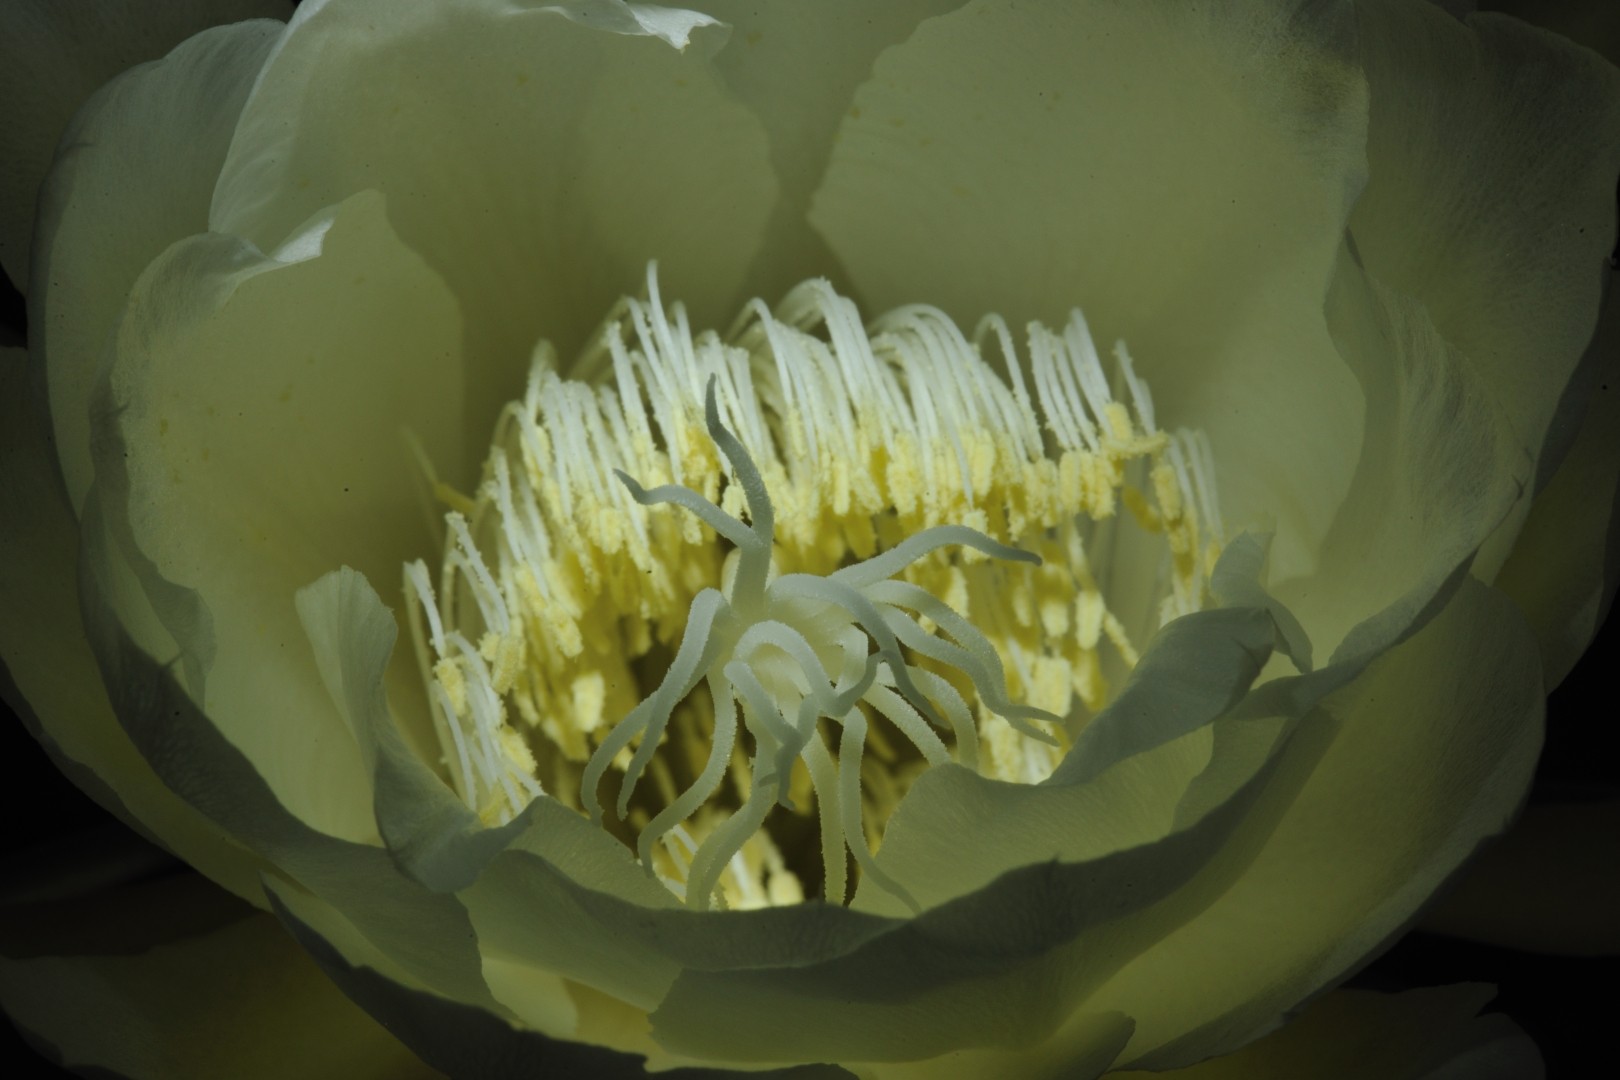 Raizes & Folhas - A Dama da Noite (Epiphyllum Oxipetalum